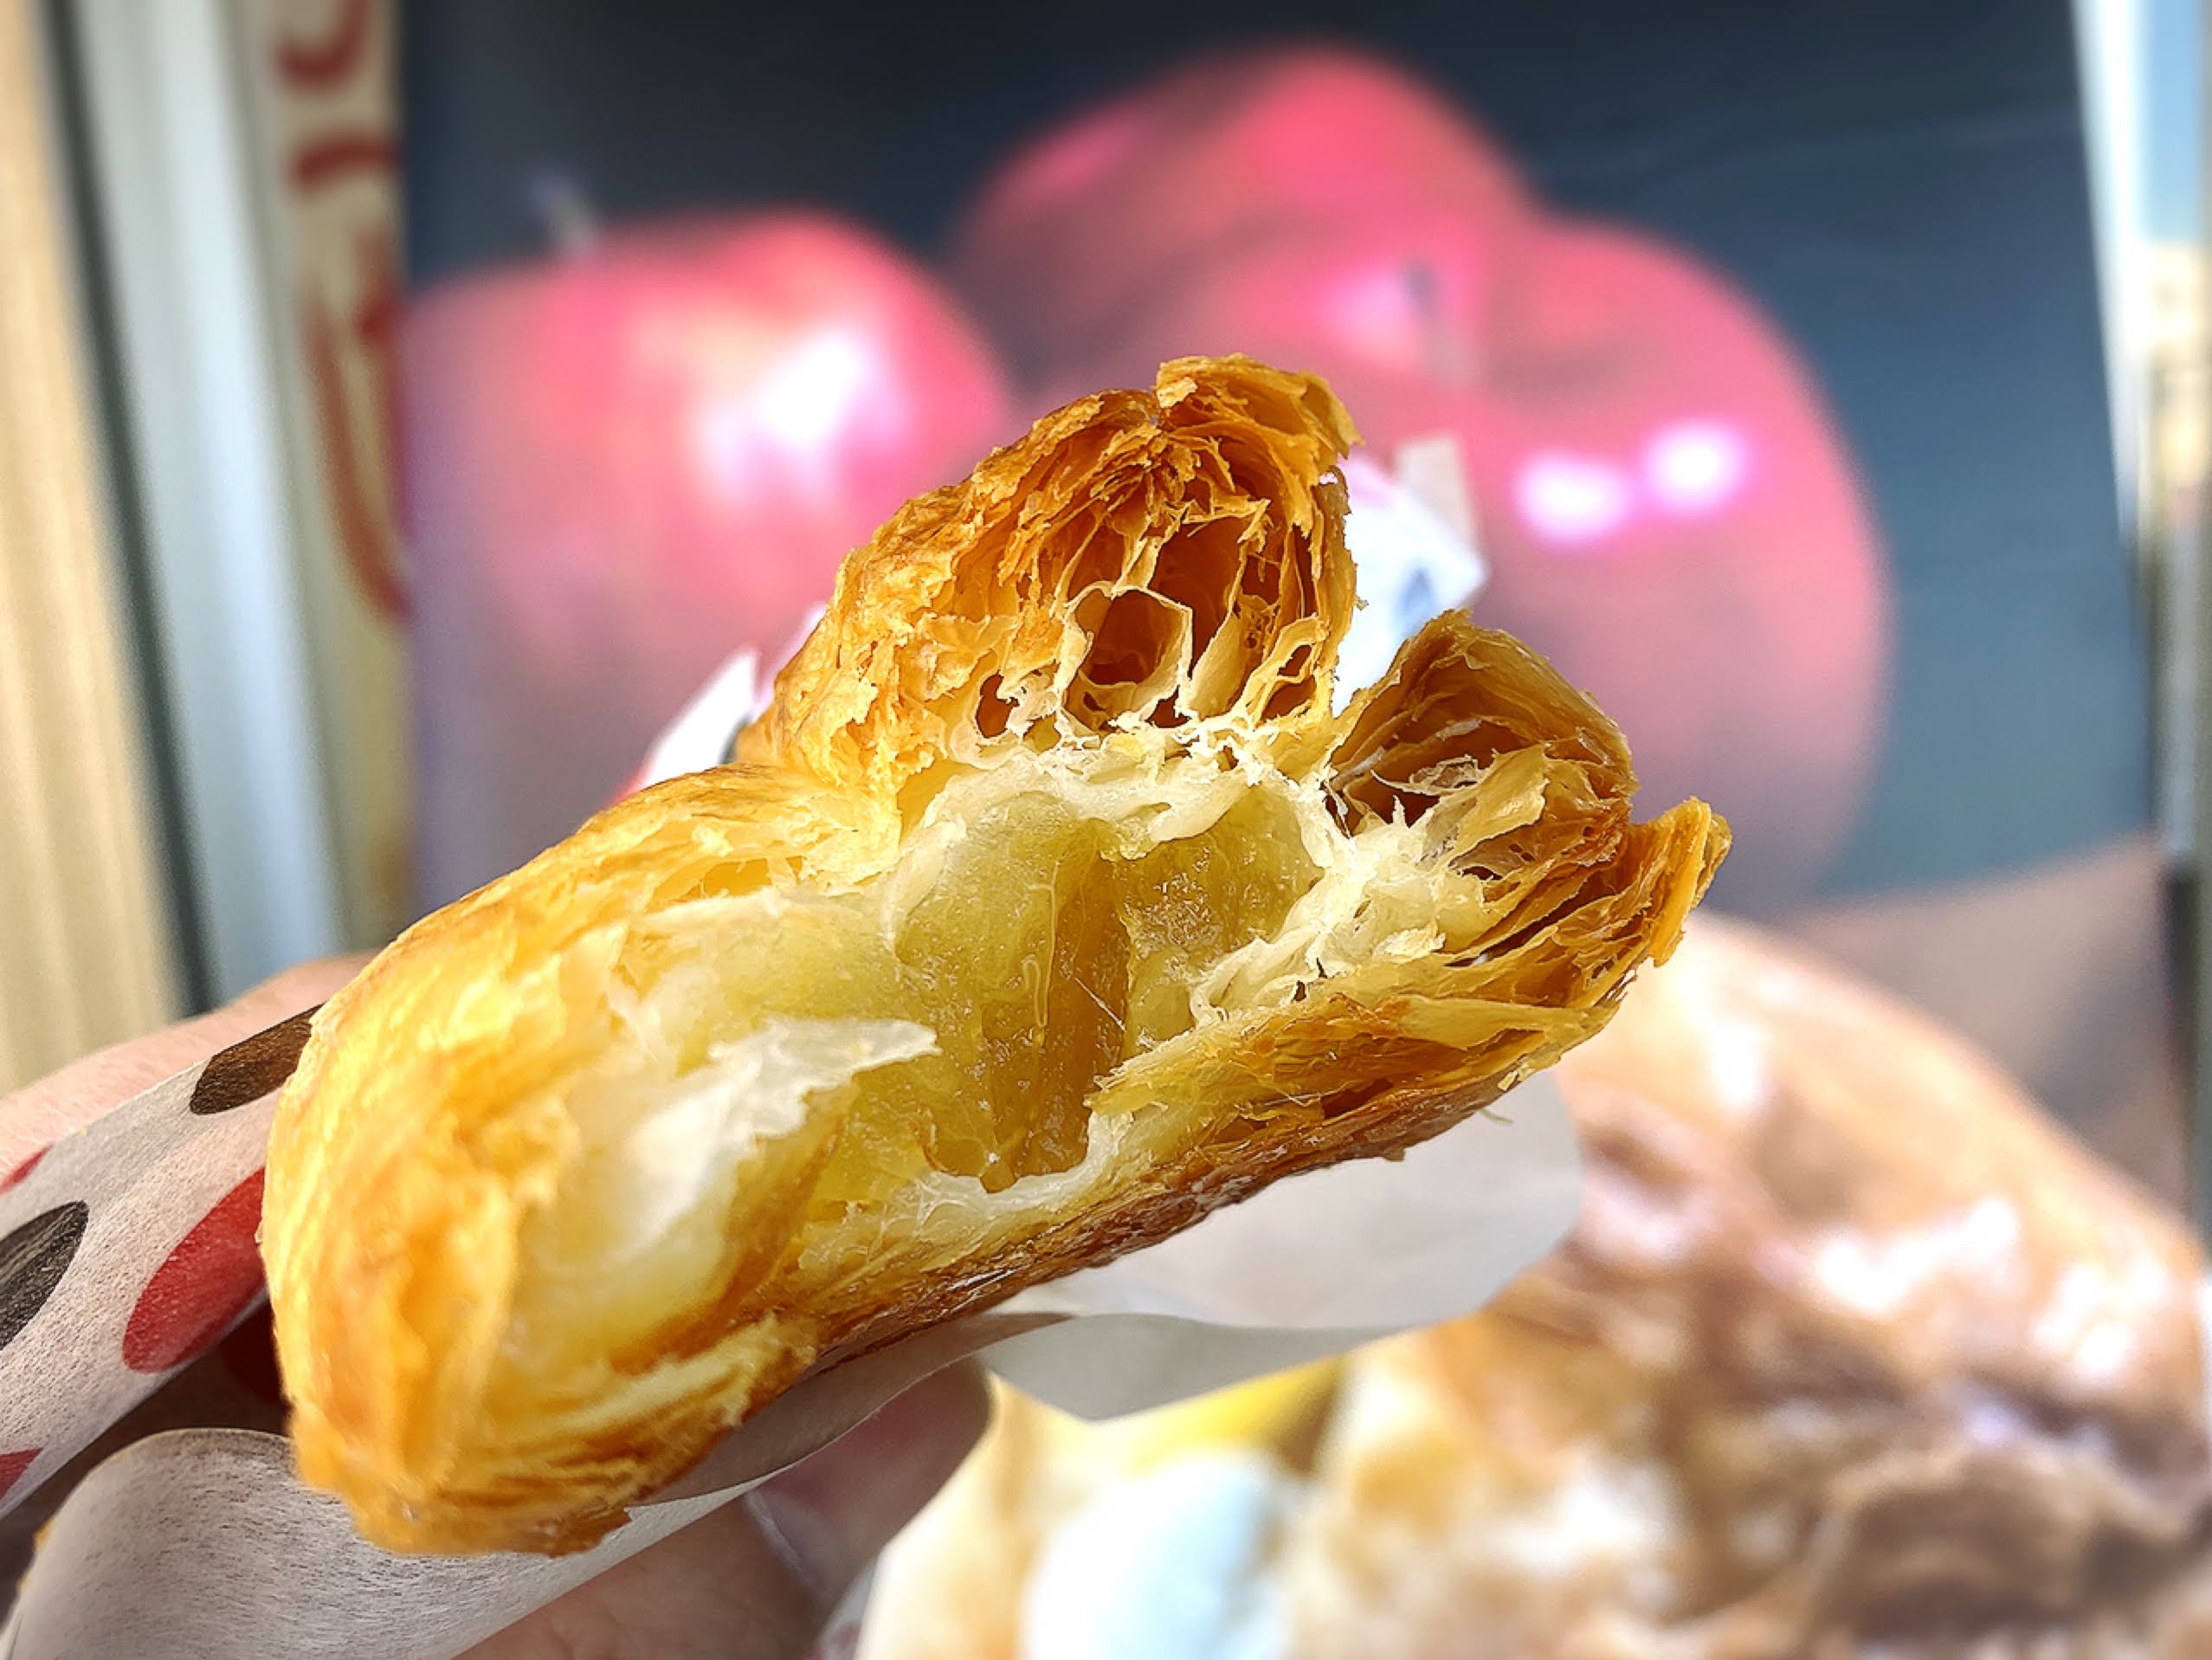 【駅チカ】ドルチェ&マルコ 新所沢 世界一のアップルパイで買って食べてみた【テイクアウト】